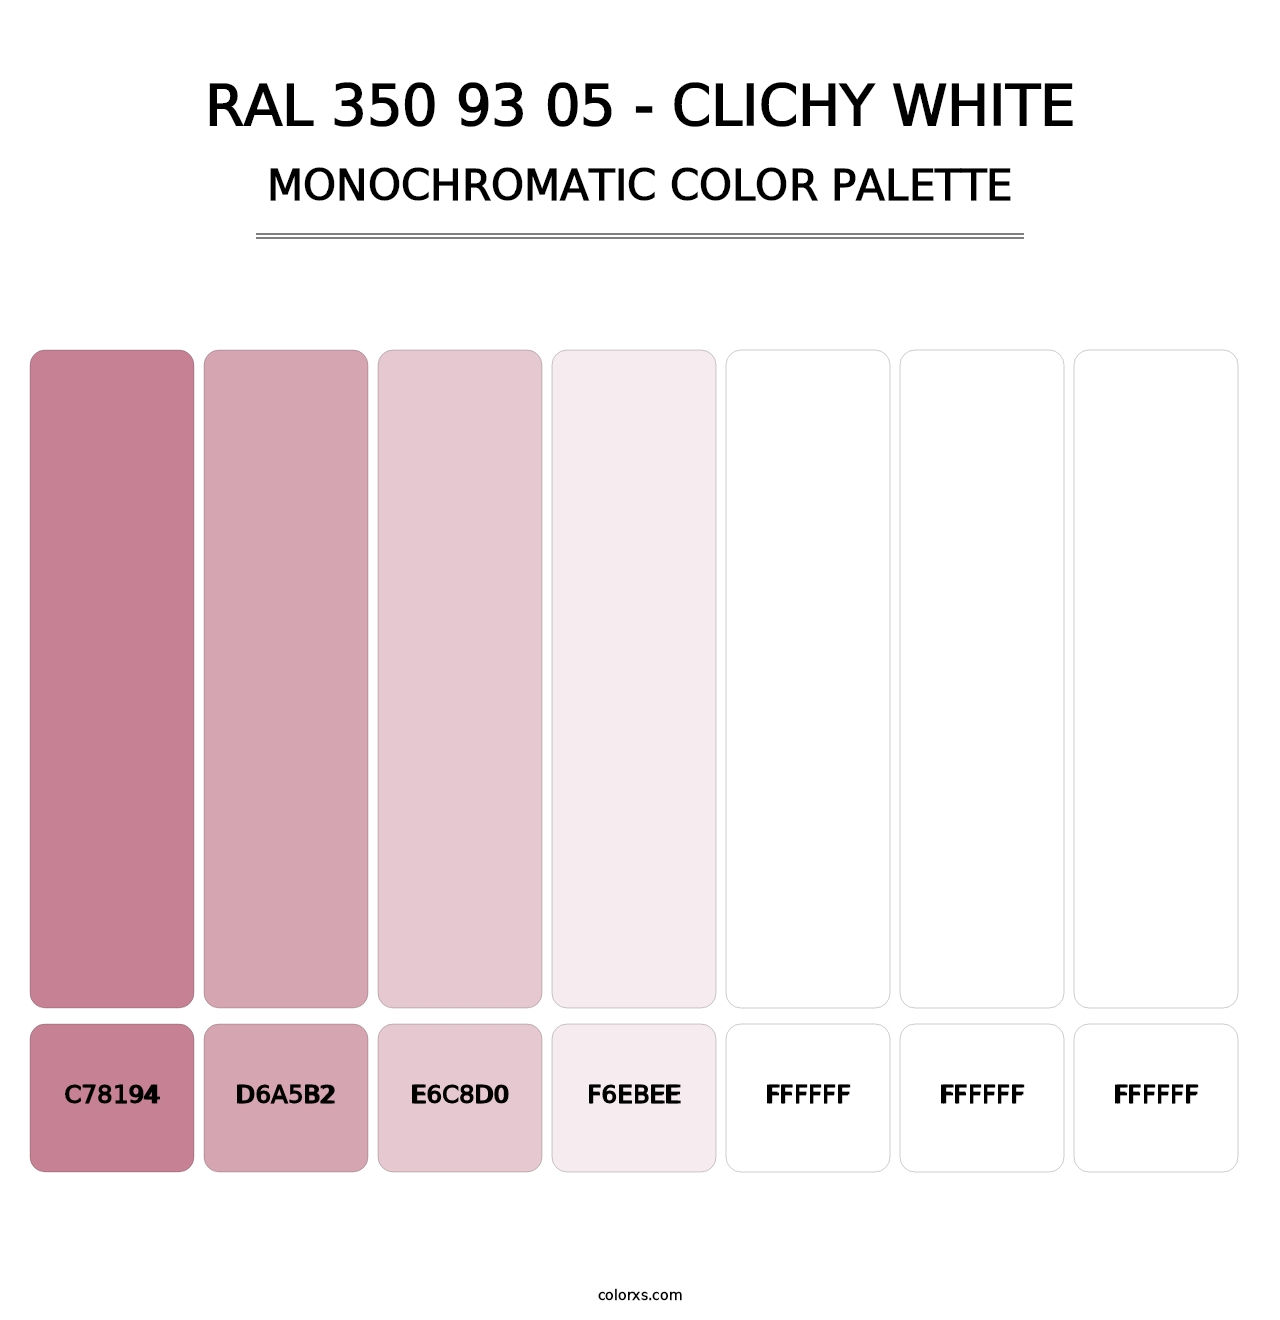 RAL 350 93 05 - Clichy White - Monochromatic Color Palette